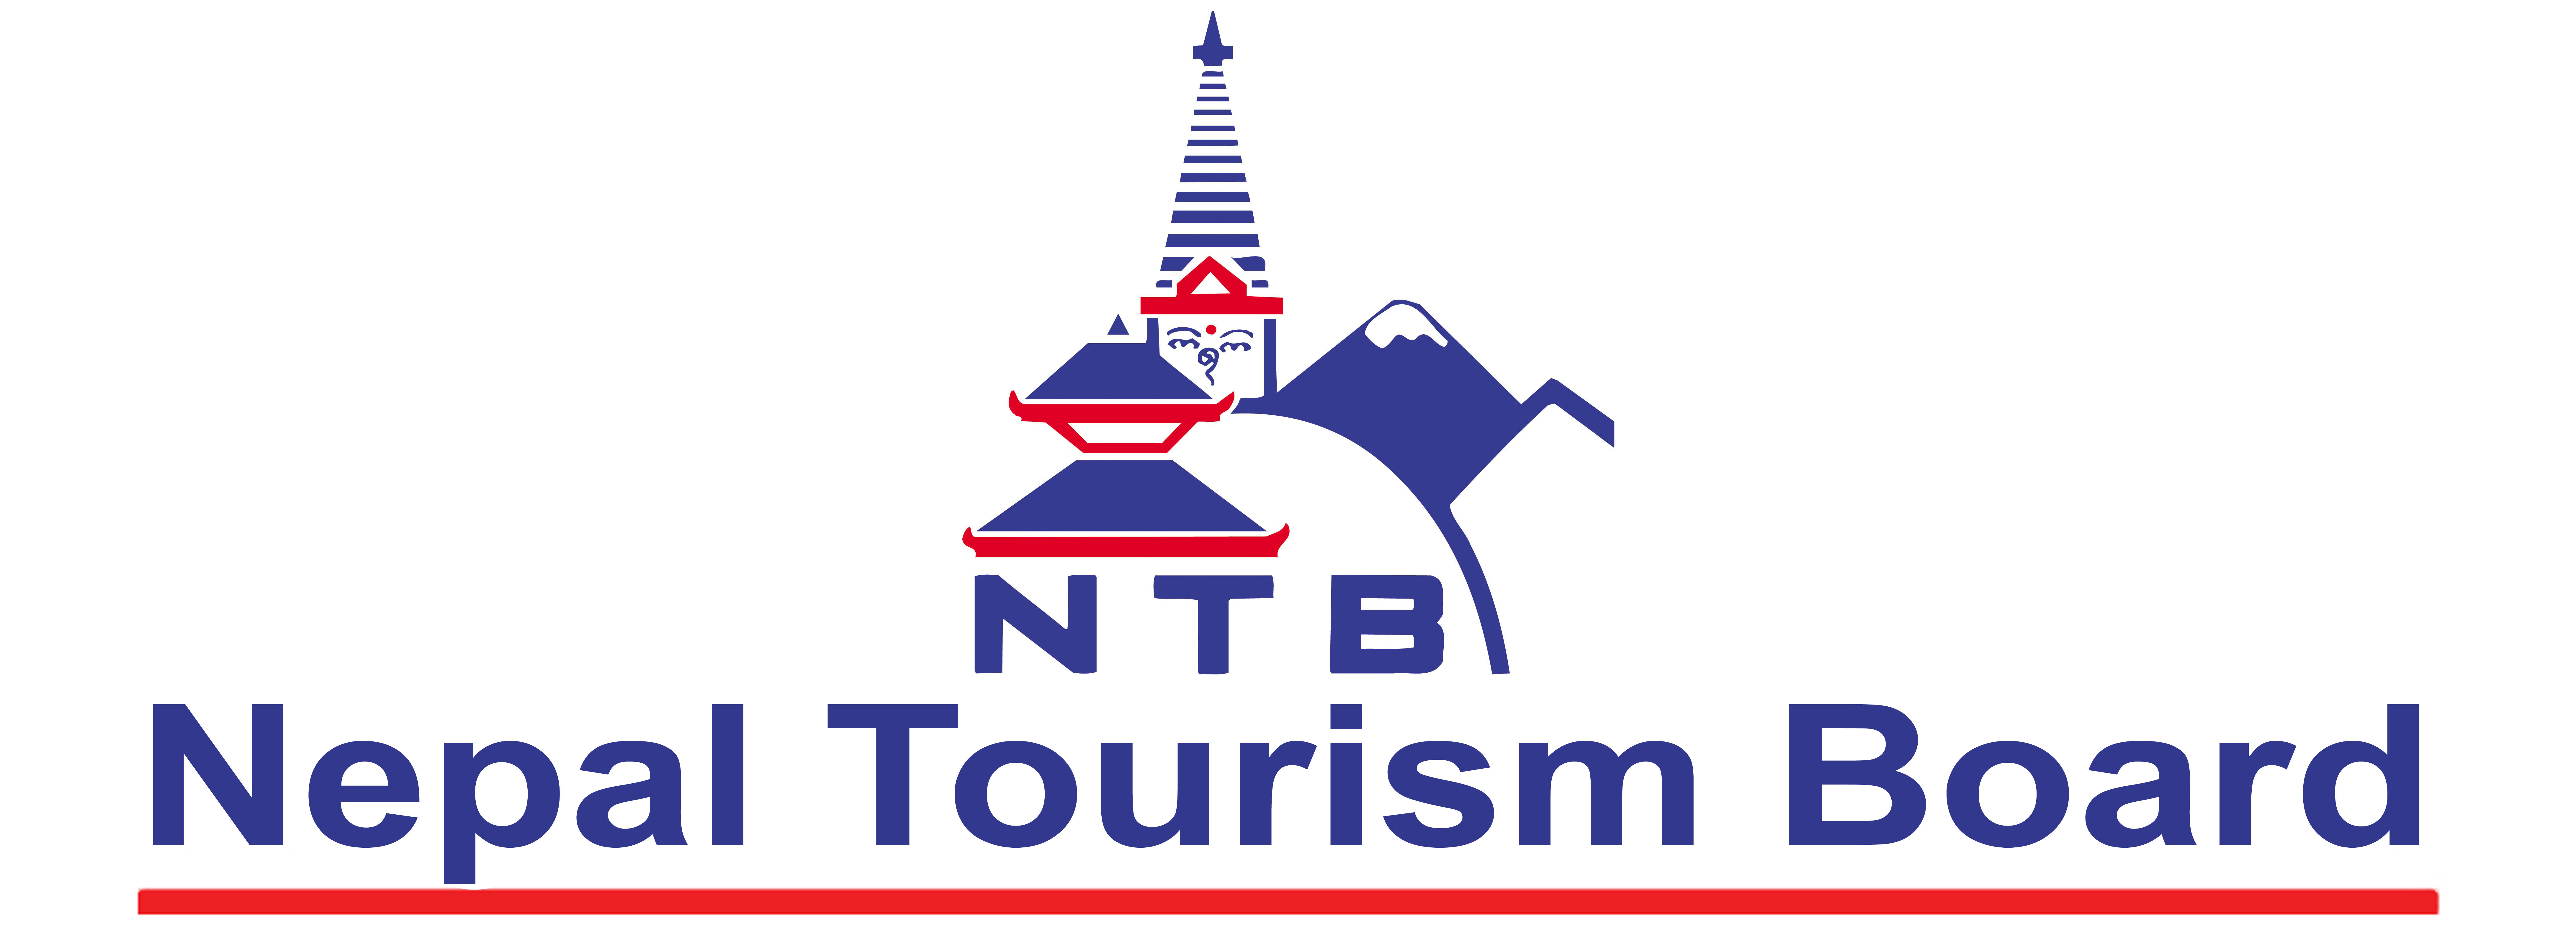 NEPAL TOURISM BOARD